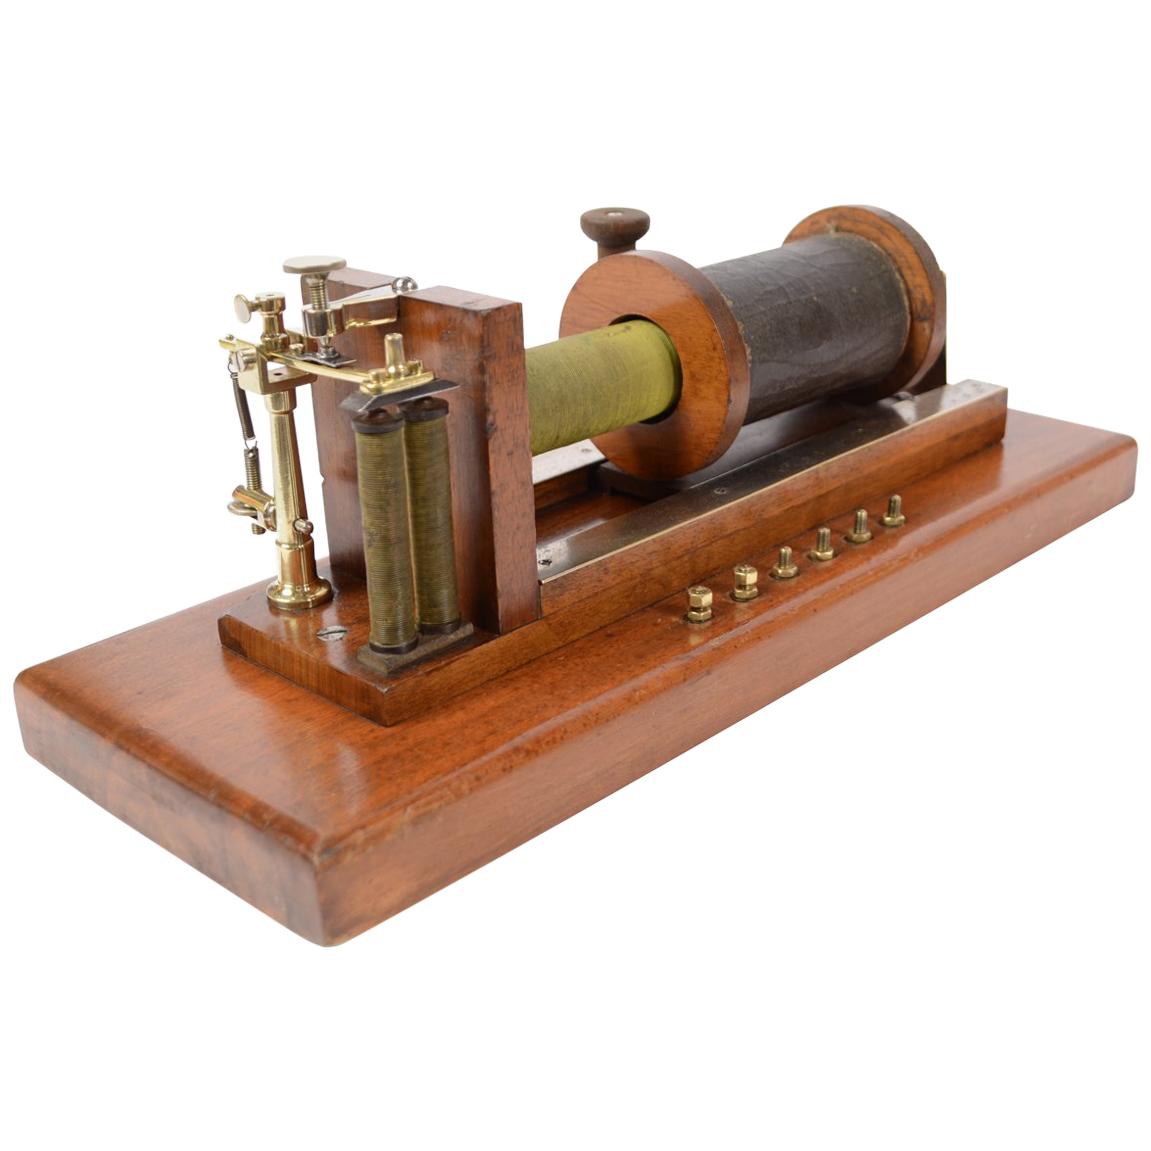 Bobine d'induction de Boi Reymond, également connue sous le nom de traîneau du système de Boi Reymond conçu vers 1870 dans le cadre des études d'électrophysiologie d'Emil Du Boid Reymond (1818-1896), physiologiste allemand connu. Il y a deux